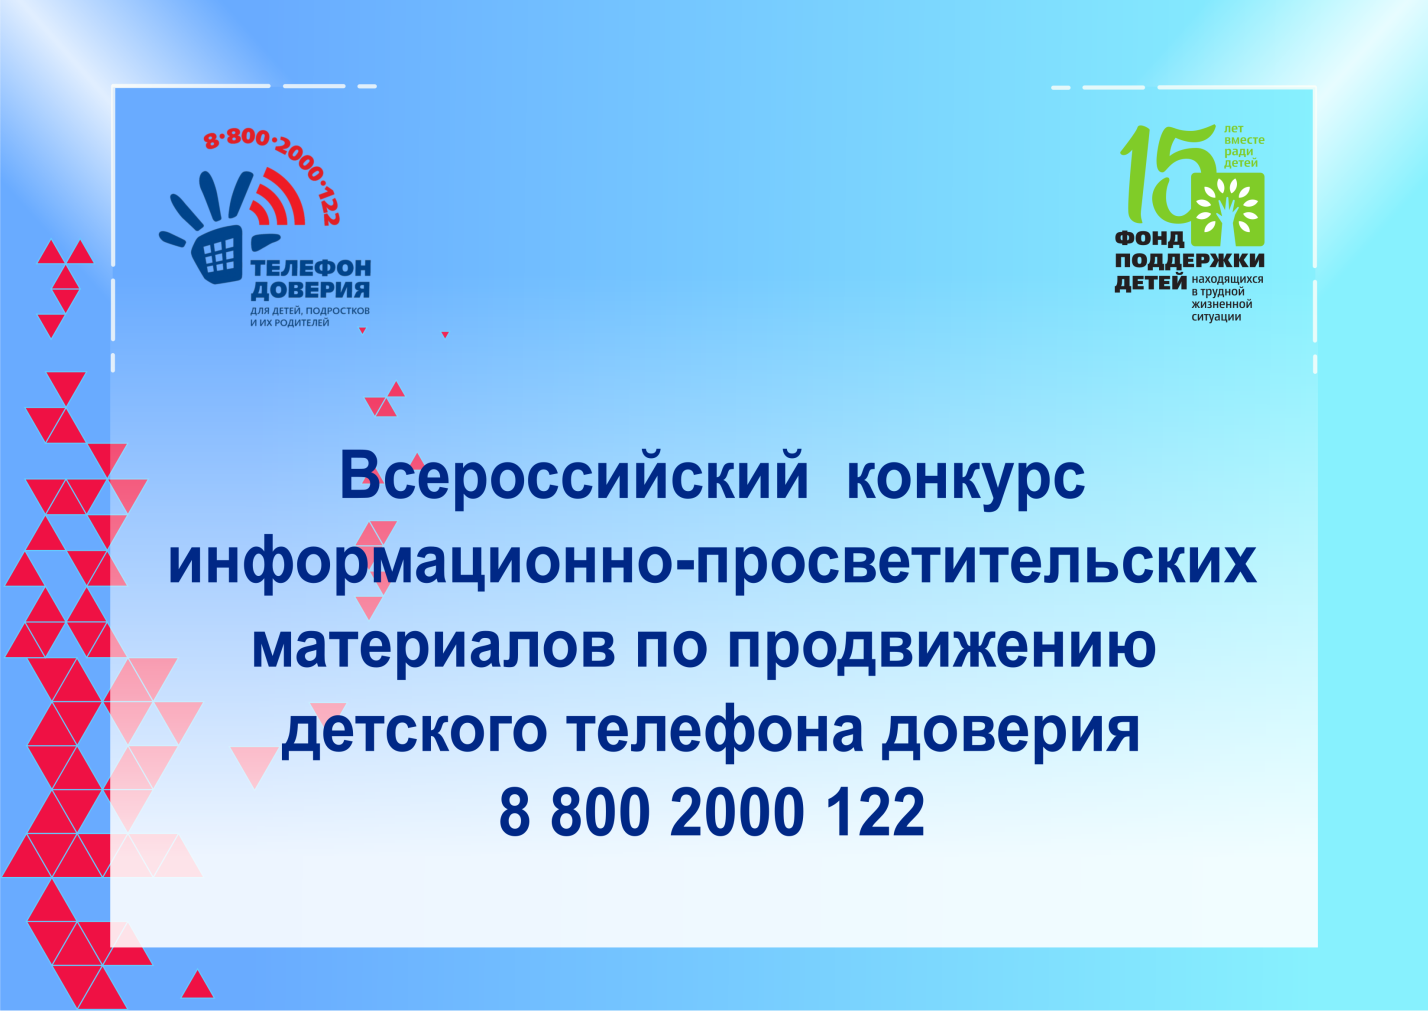 Продолжается прием заявок на участие во Всероссийском конкурсе информационно-просветительских материалов по продвижению  детского телефона доверия 8 800 2000 122